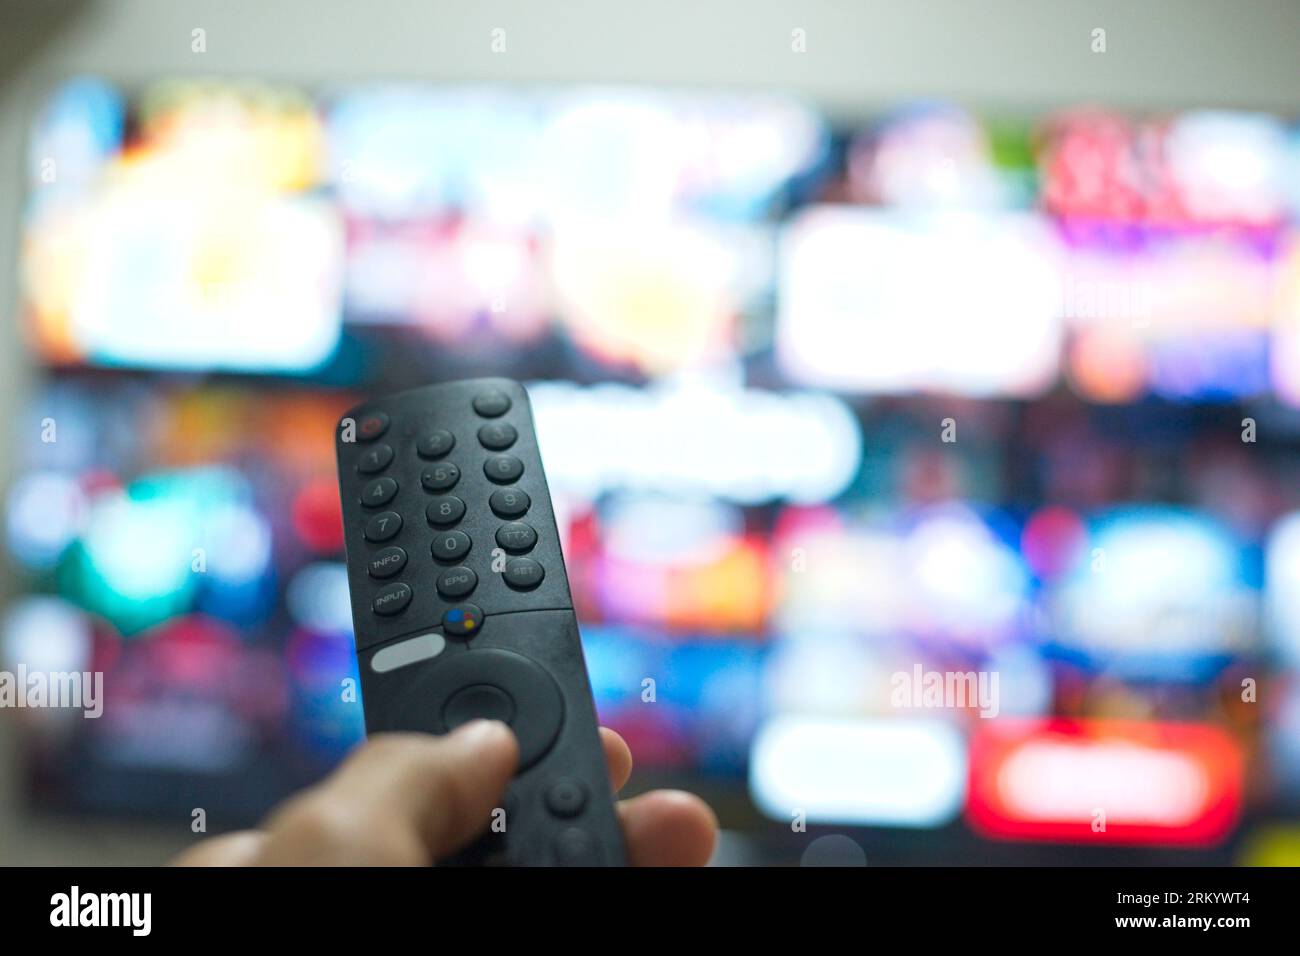 Grazie al telecomando TV, puoi passare da una serie TV all'altra dalla piattaforma di servizi di streaming. Il nuovo modo di godersi l'intrattenimento a casa. Foto Stock